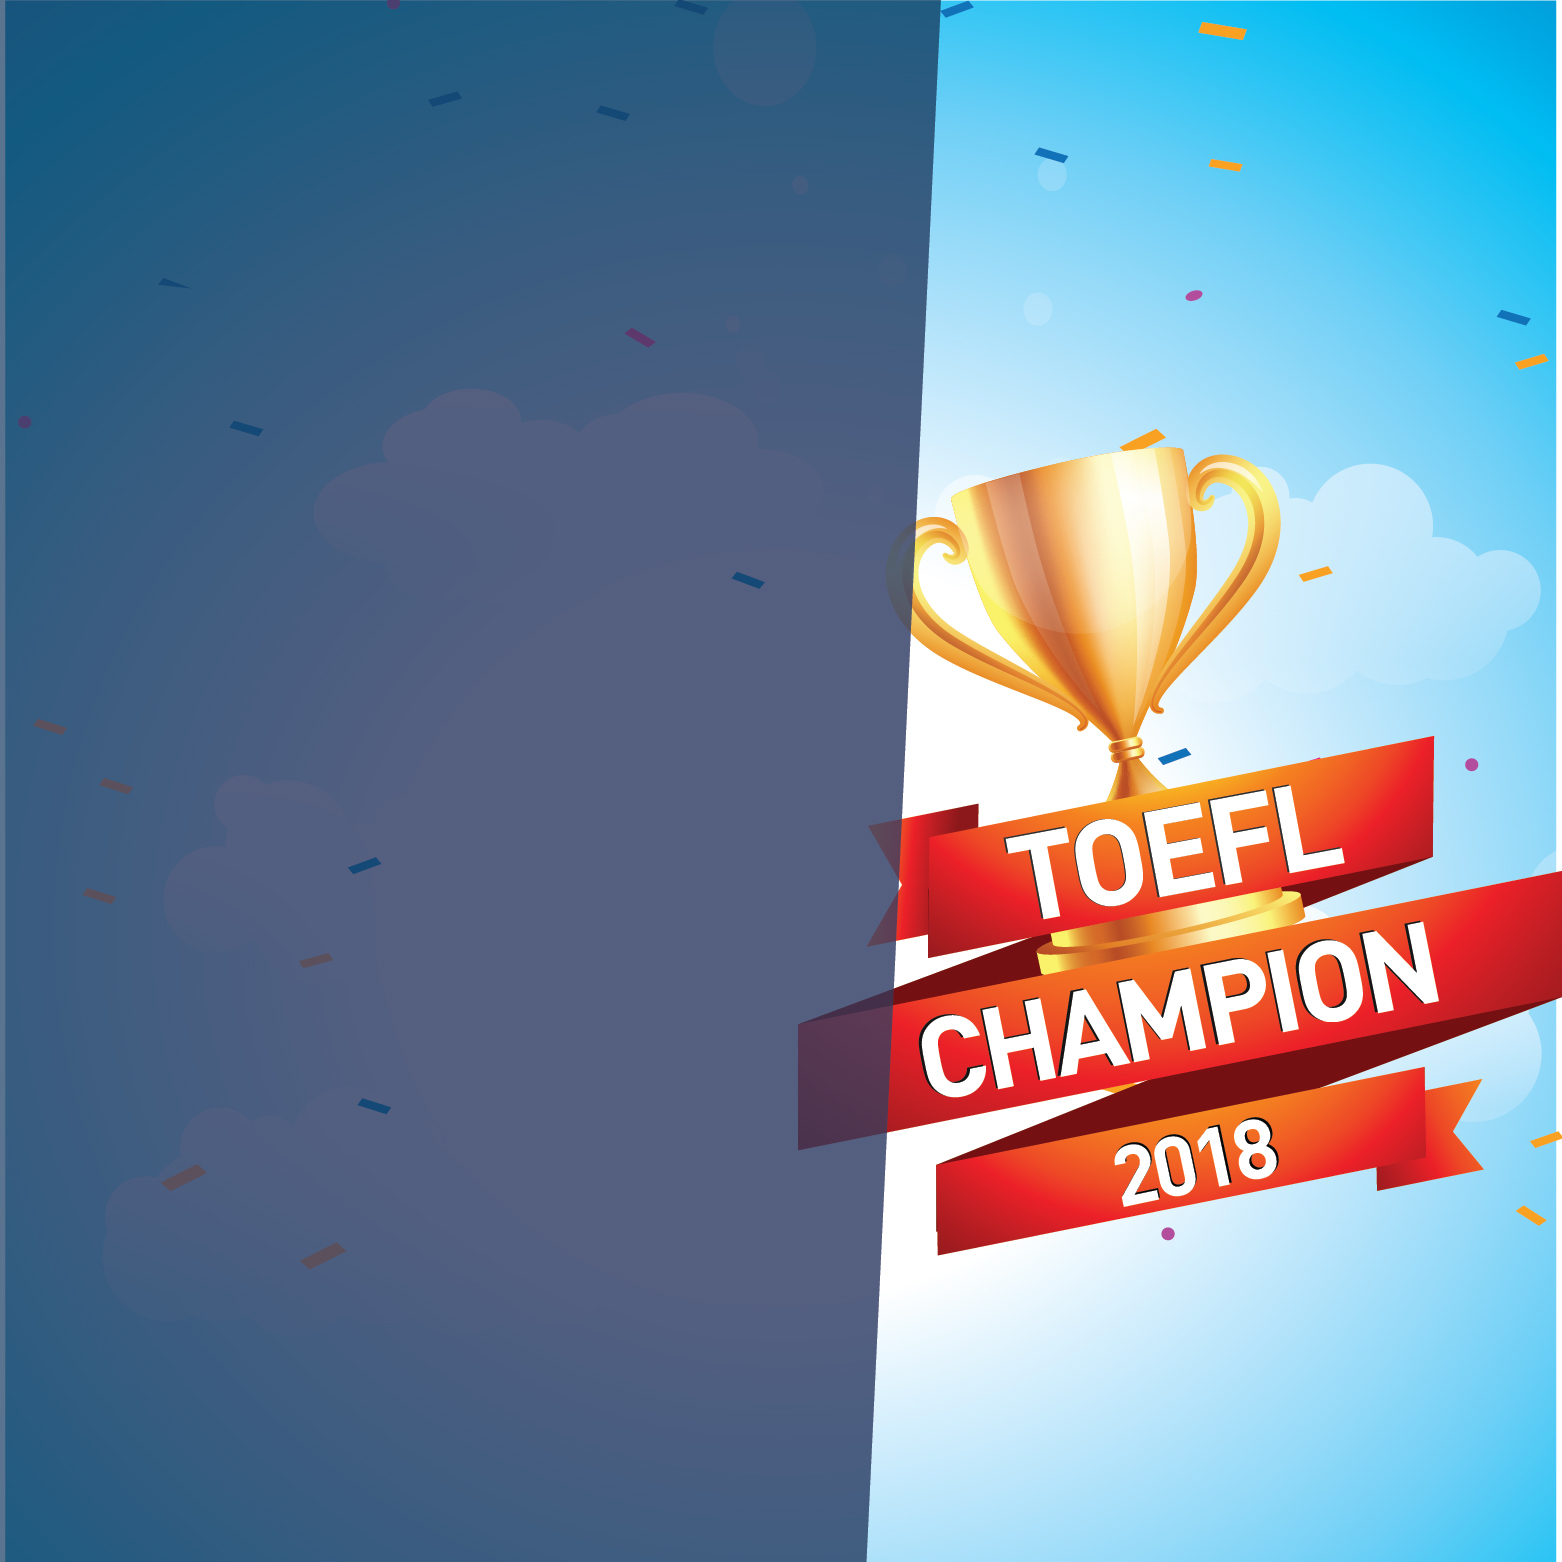 SUMMIT TOEFL CHAMPION 2018————(Hạn đăng ký: 25/5/2018)